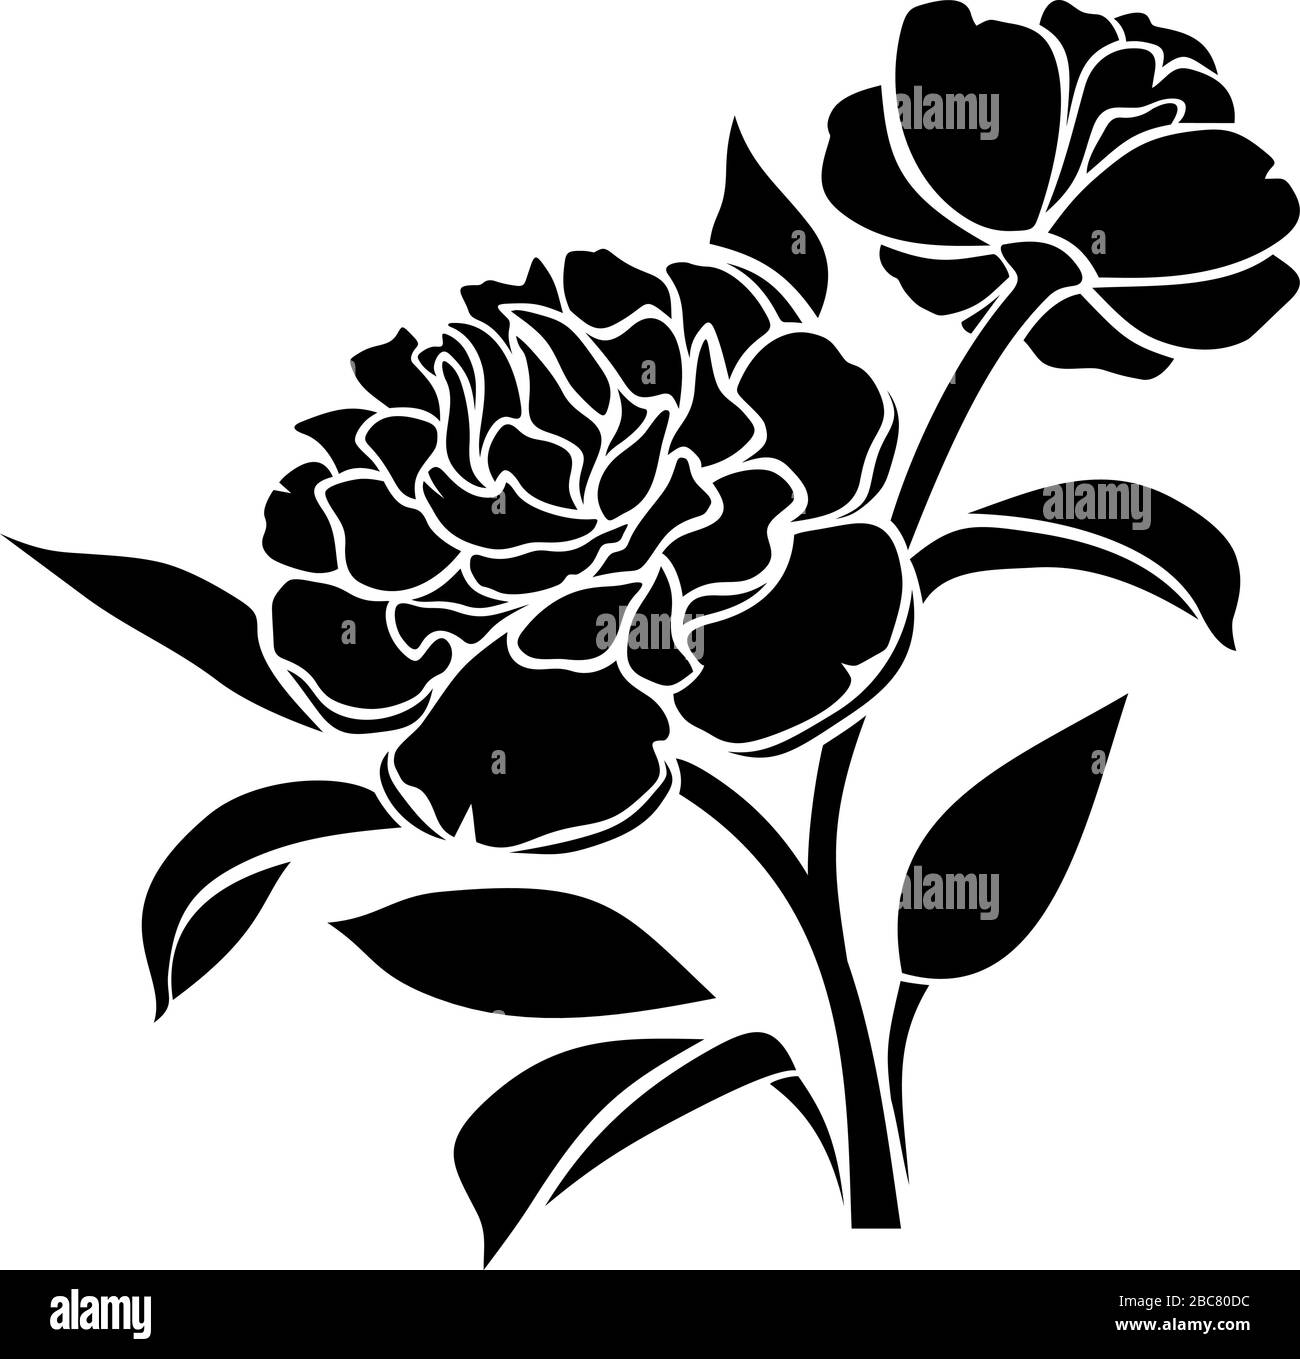 Silhouette vettoriale nera di fiori di peonia isolata su sfondo bianco. Illustrazione Vettoriale